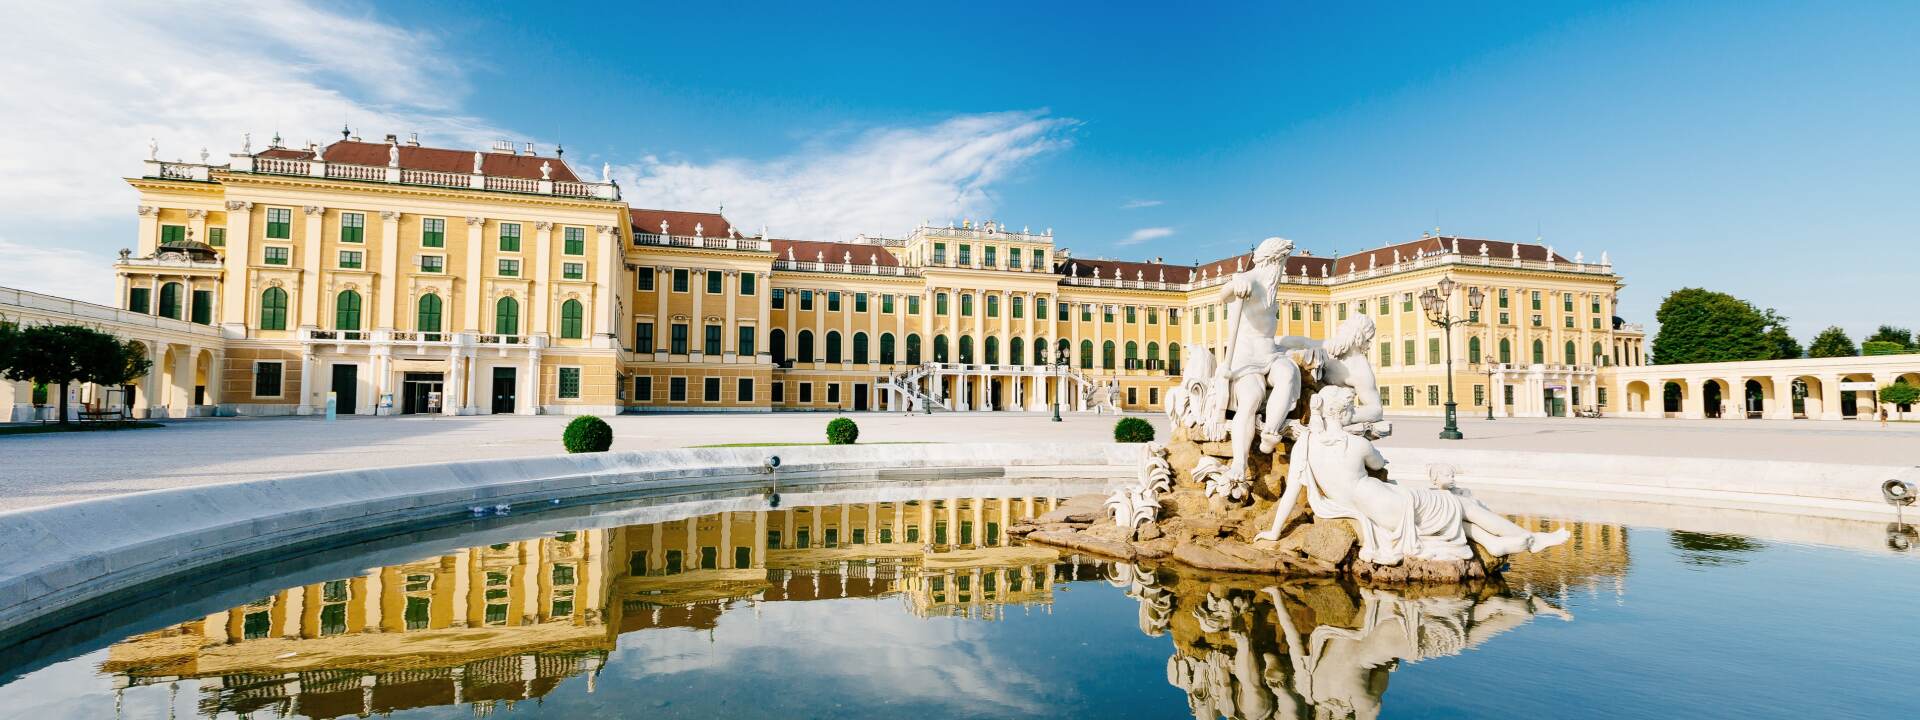 Historische Stadtrundfahrt Wien - Schloss Schönbrunn mit Brunnen © Vienna Sightseeing Tours | Bernhard Luck